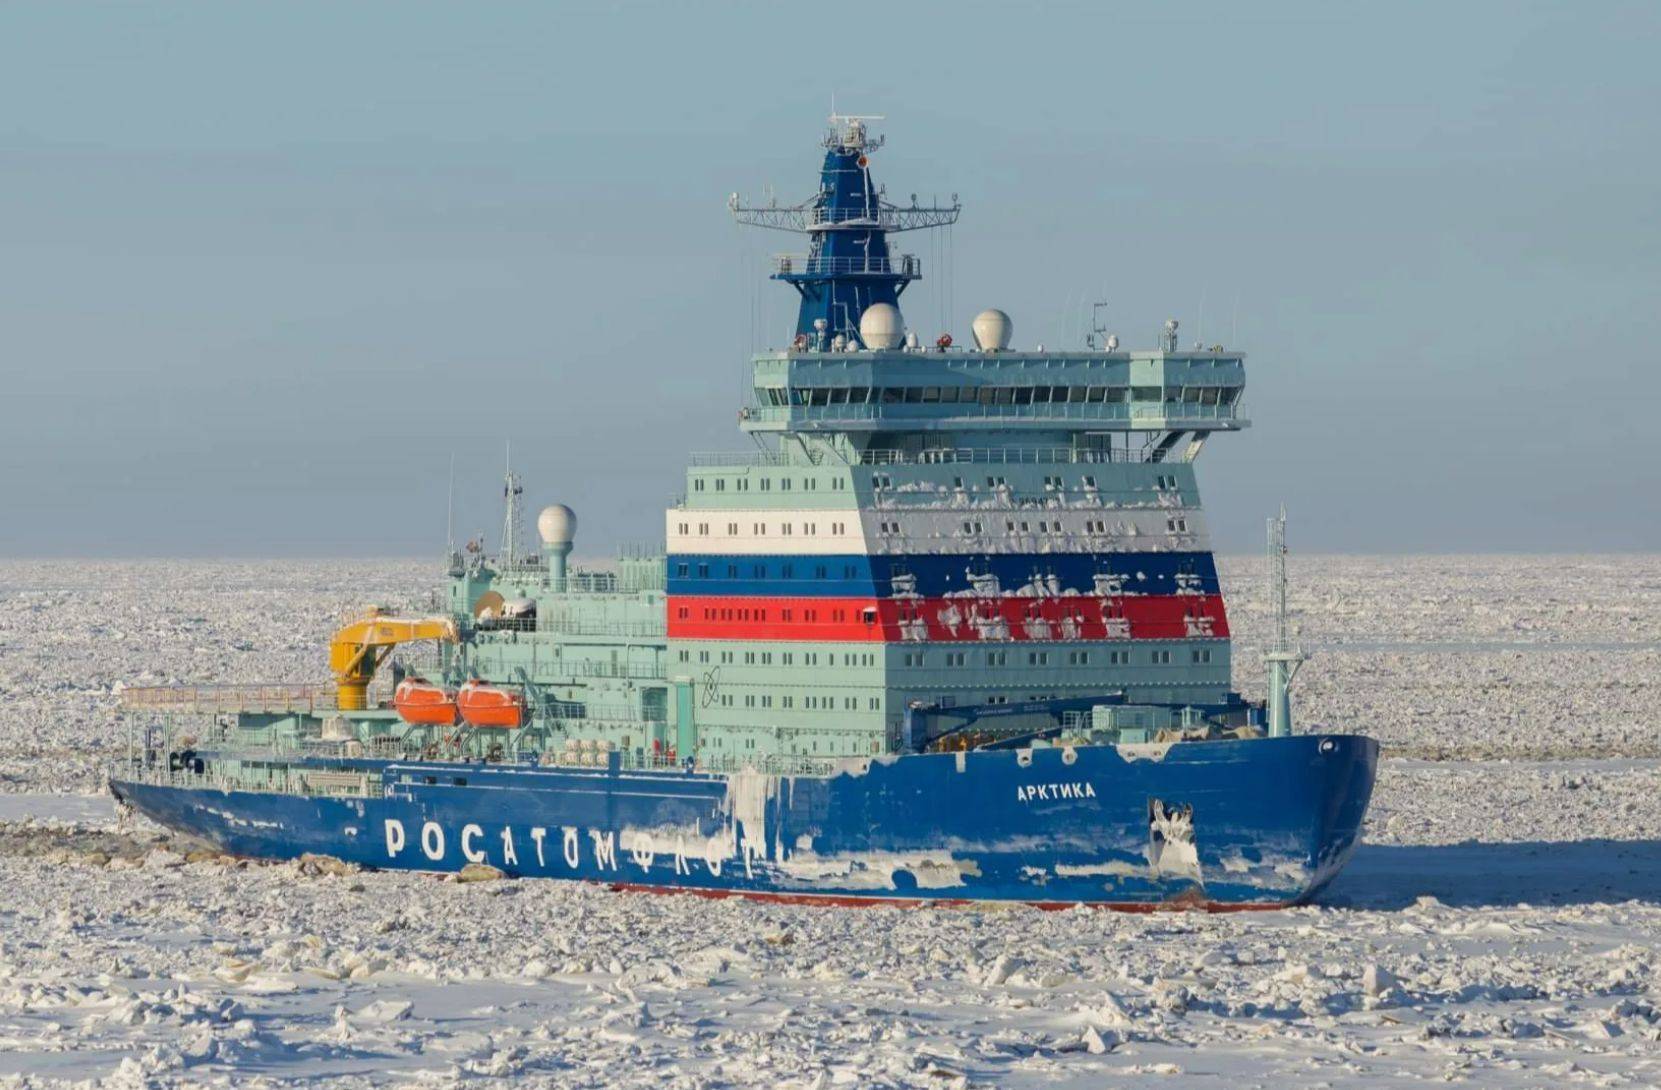 西伯利亚号和乌拉尔号3艘现代化核动力破冰船,目前全世界最大的核